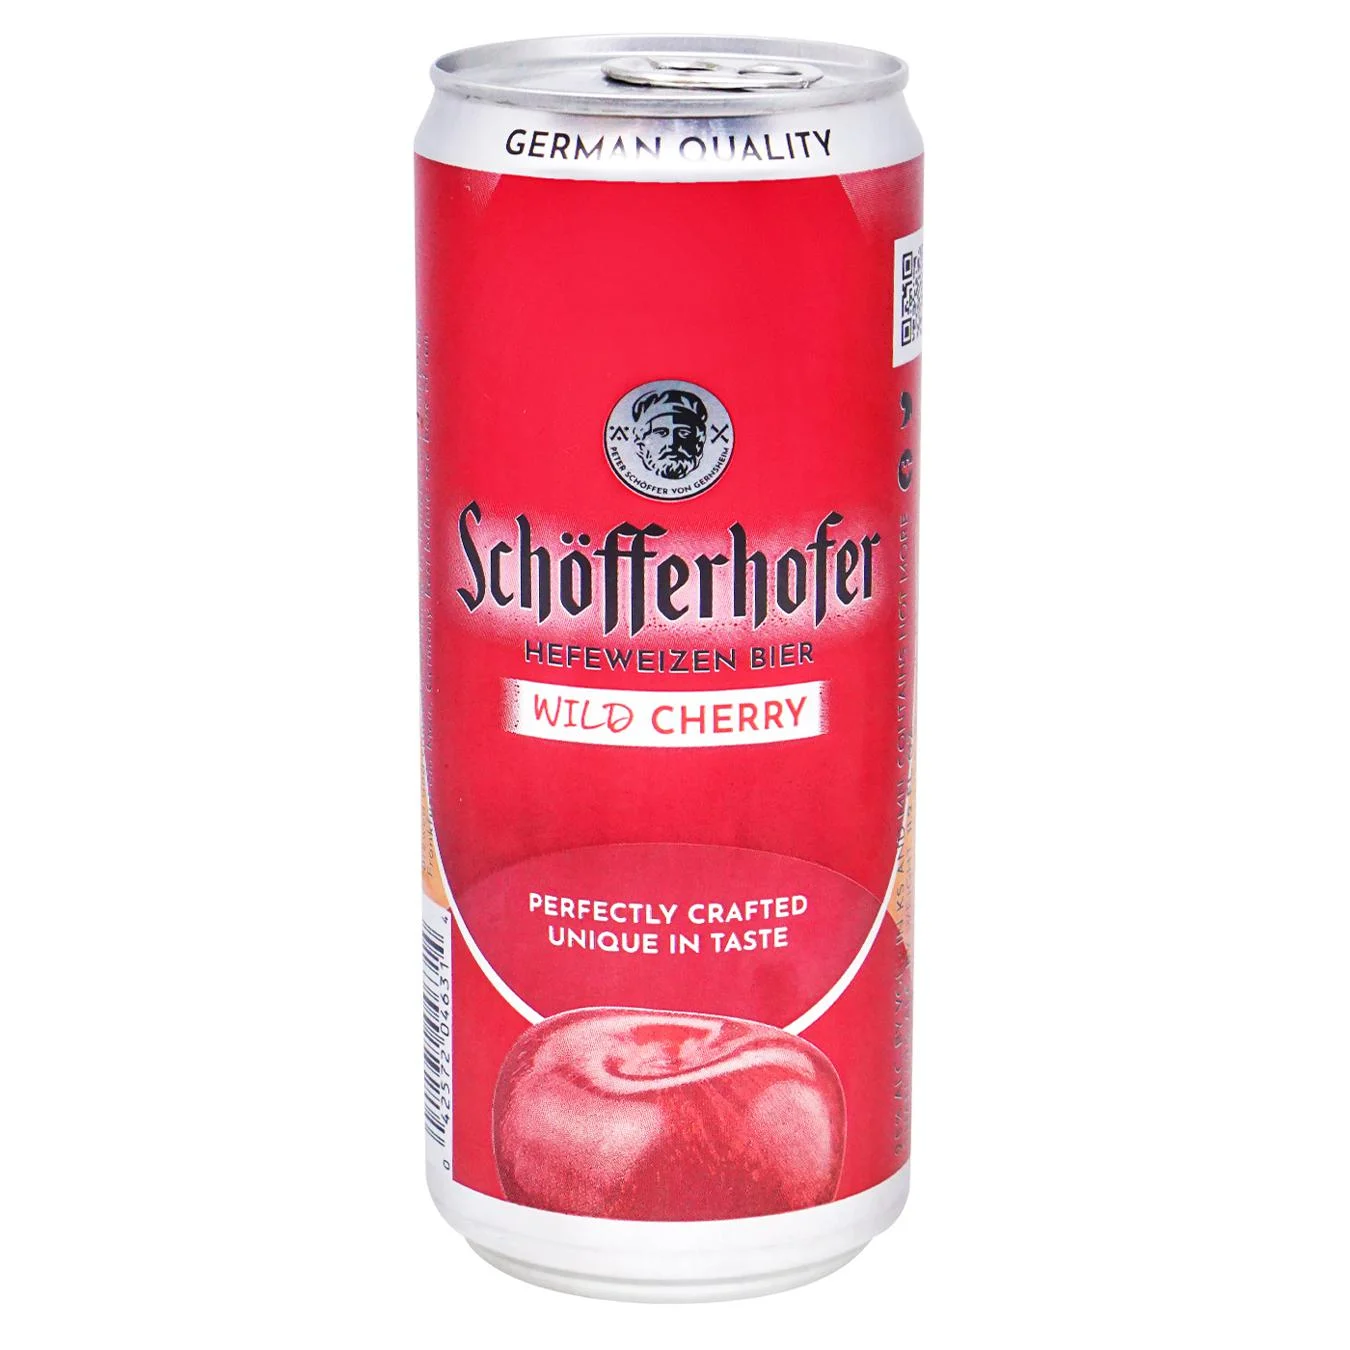 Пиво светлое Schofferhofer со вкусом вишни 2,5% 0,33л железная банка